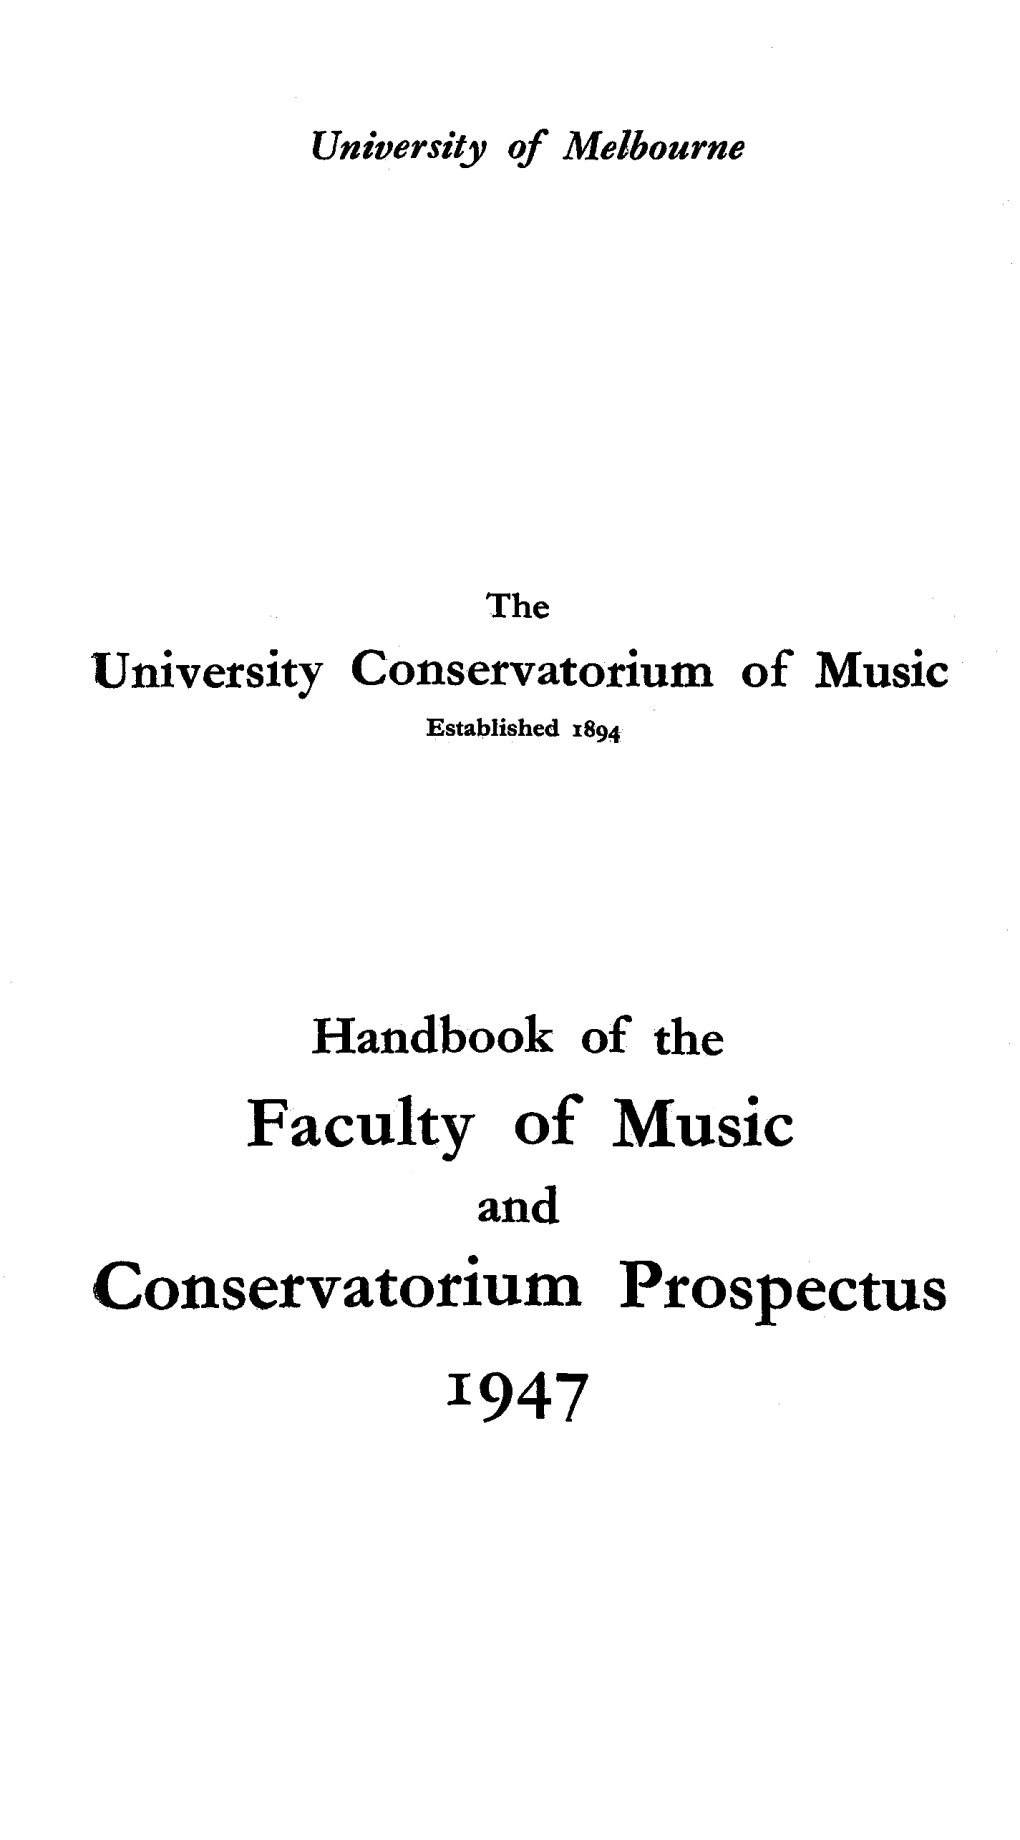 Faculty of Music Conservatorium Prospectus 1947